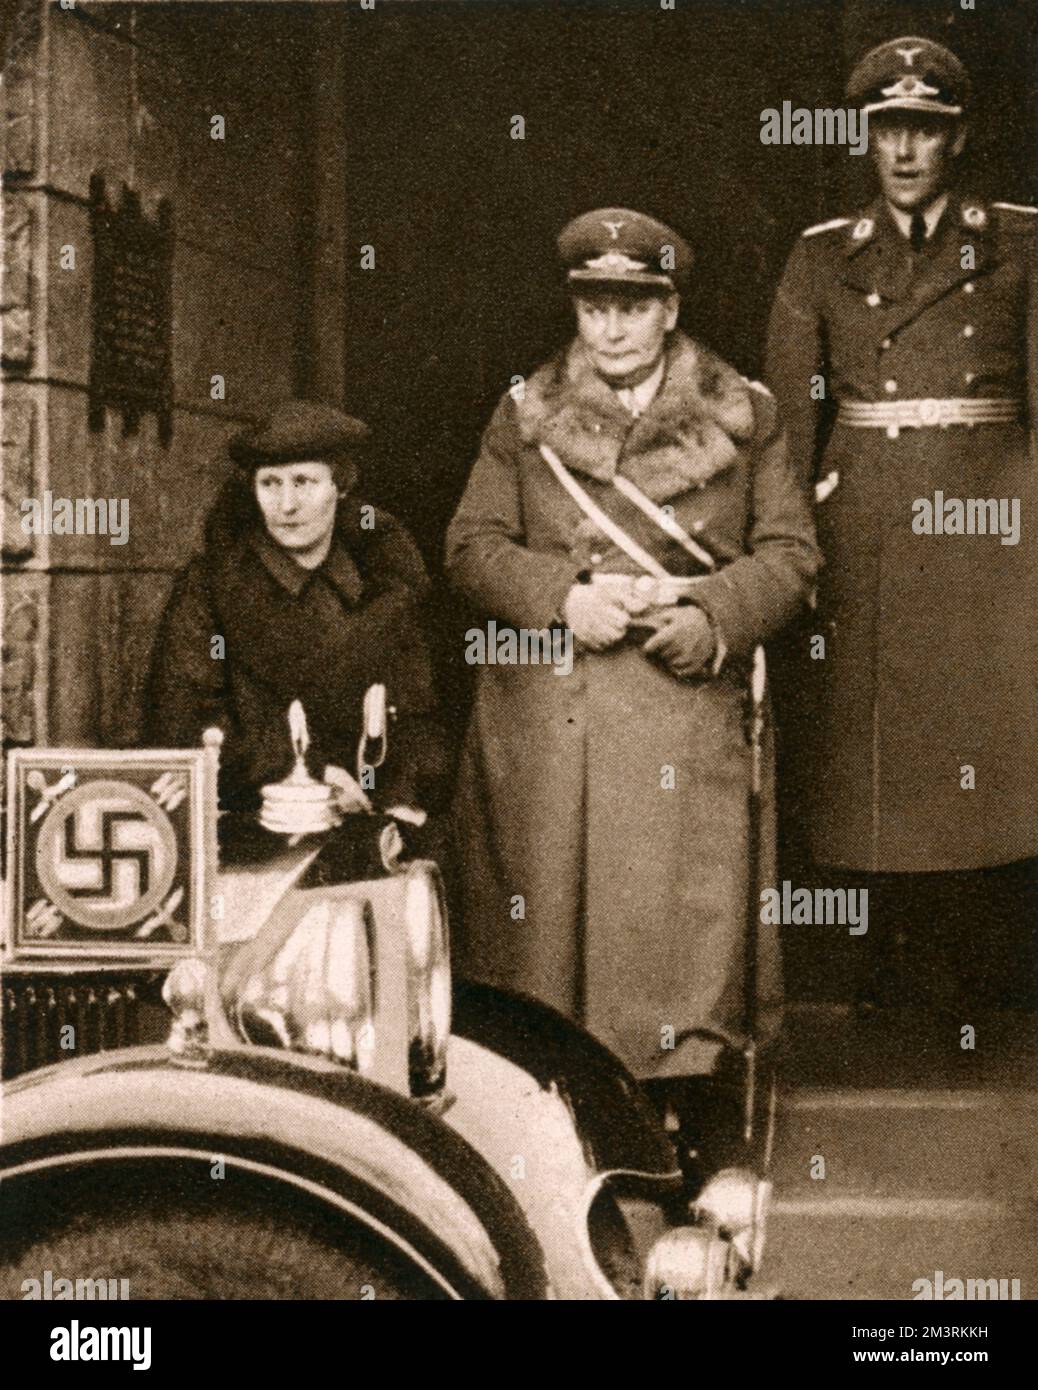 General Hermann Göring hat das Verlassen der St. George's Church, die britische Kirche in Berlin, wo er eine Trauerfeier für den verstorbenen König George V besucht hatte. Seine Frau Emmy begleitet ihn. Datum: 1936 Stockfoto